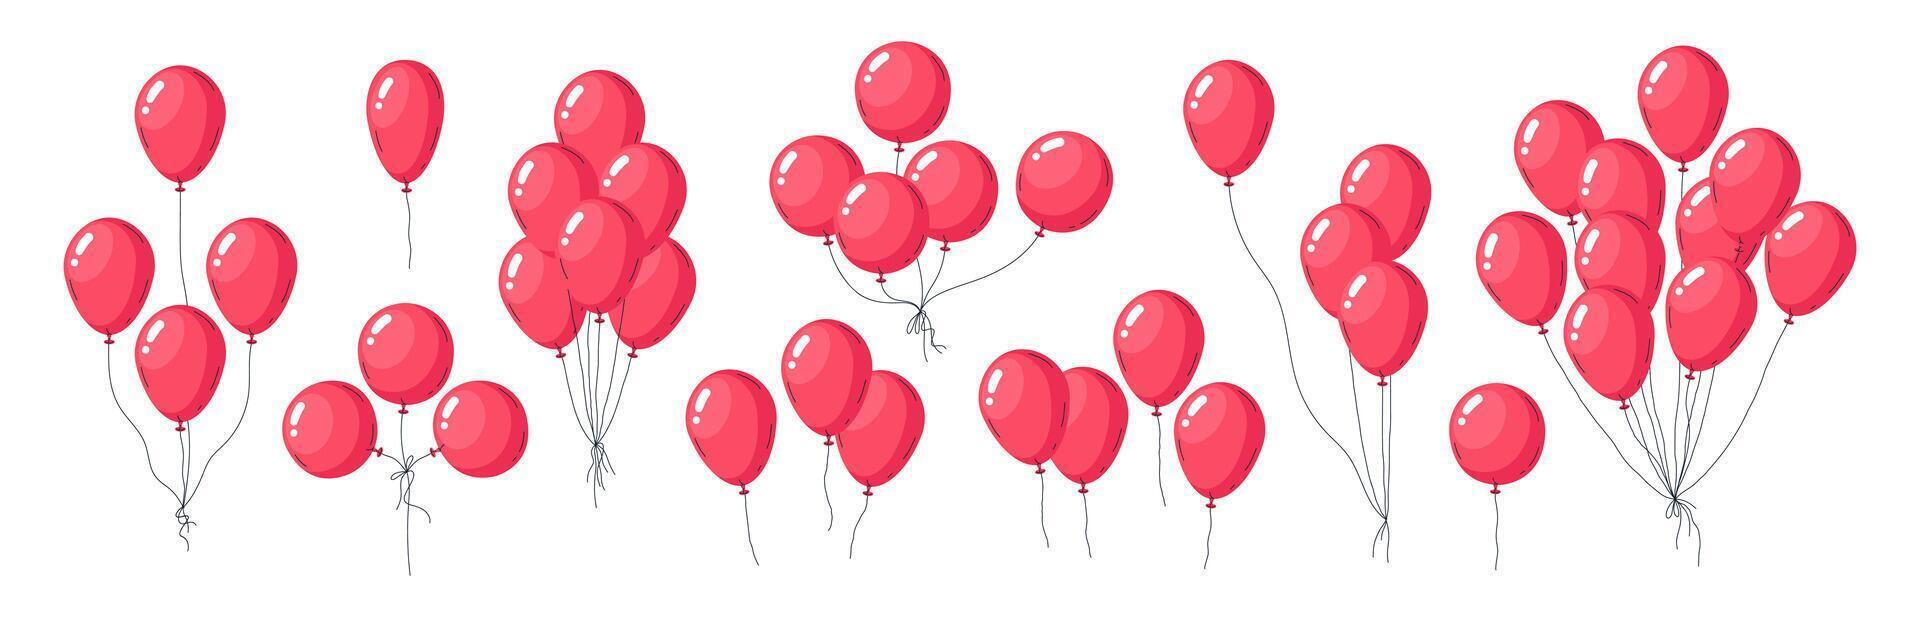 röd ballonger klasar. helium flytande ballong, luft ballonger födelsedag fest dekorationer platt vektor illustration uppsättning. flygande röd glansig ballonger på vit